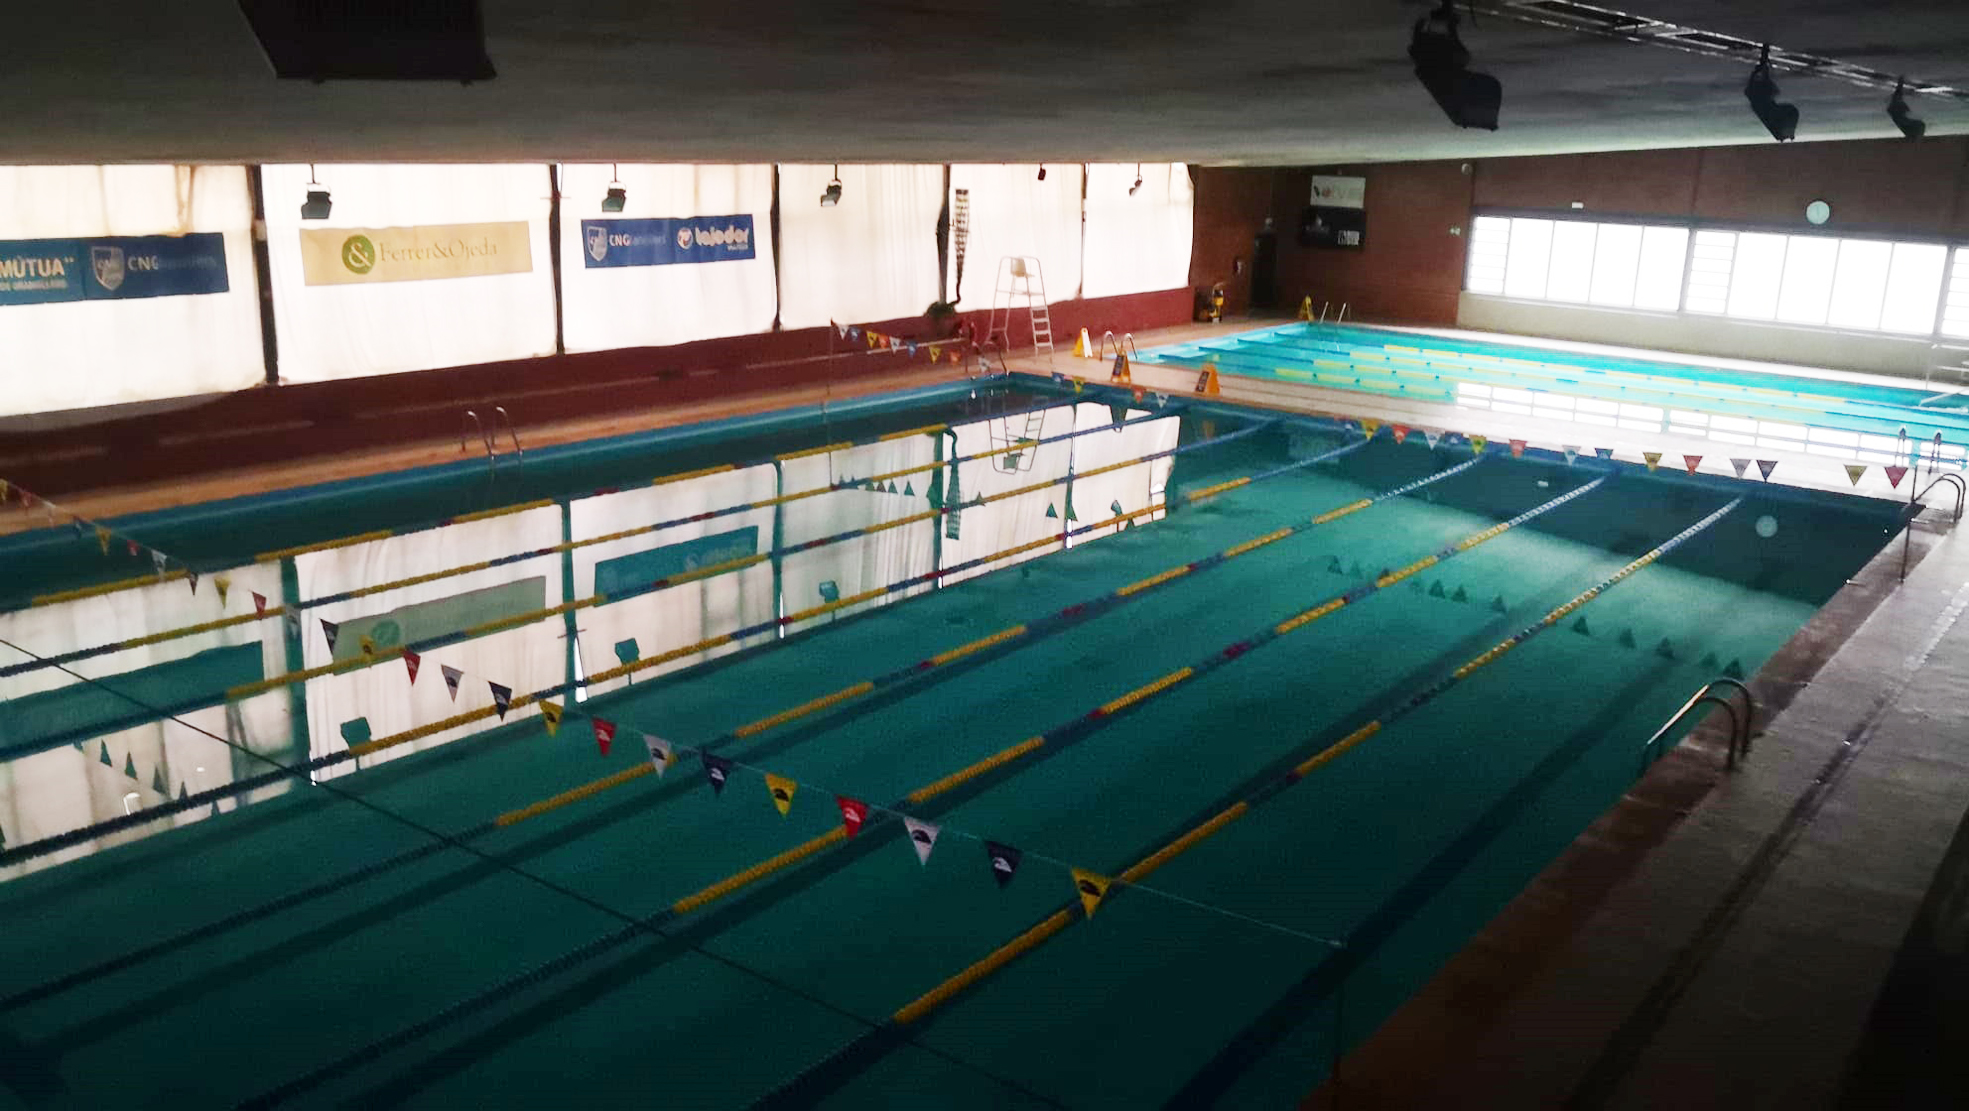 Una de les piscines interiors del club, tancada i sense llum